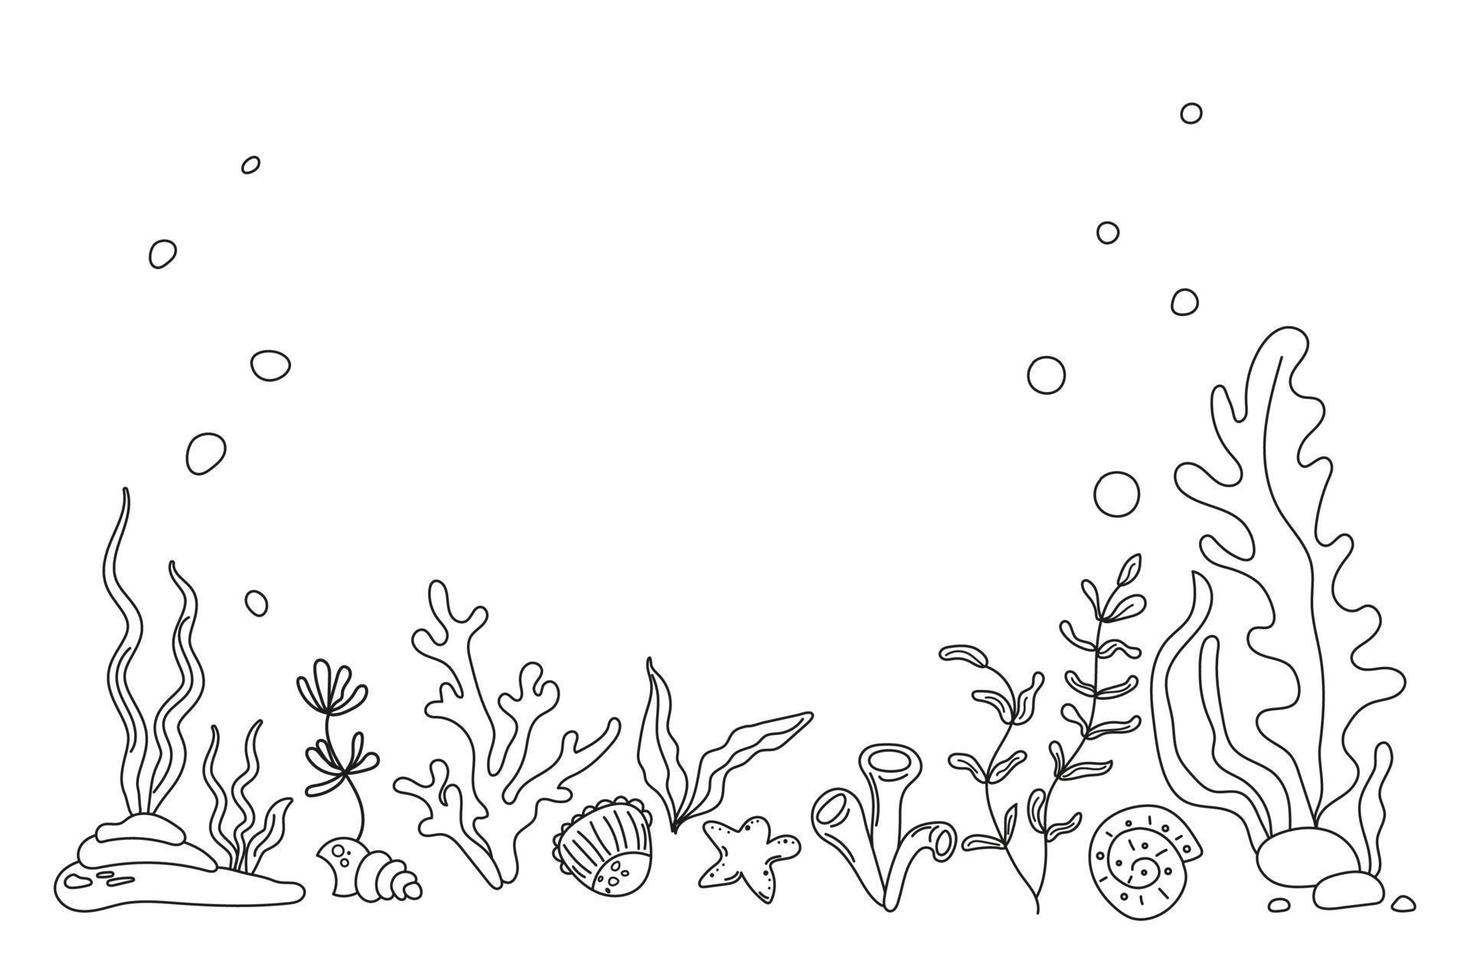 Unterwasserwelt mit Korallenriff und Algen im Meer oder Ozean. unter wasserhintergrund mit platz für text. Meeresbodenlandschaft im Skizzenstil mit Meeresflora und -fauna. hand gezeichnete vektorillustration vektor